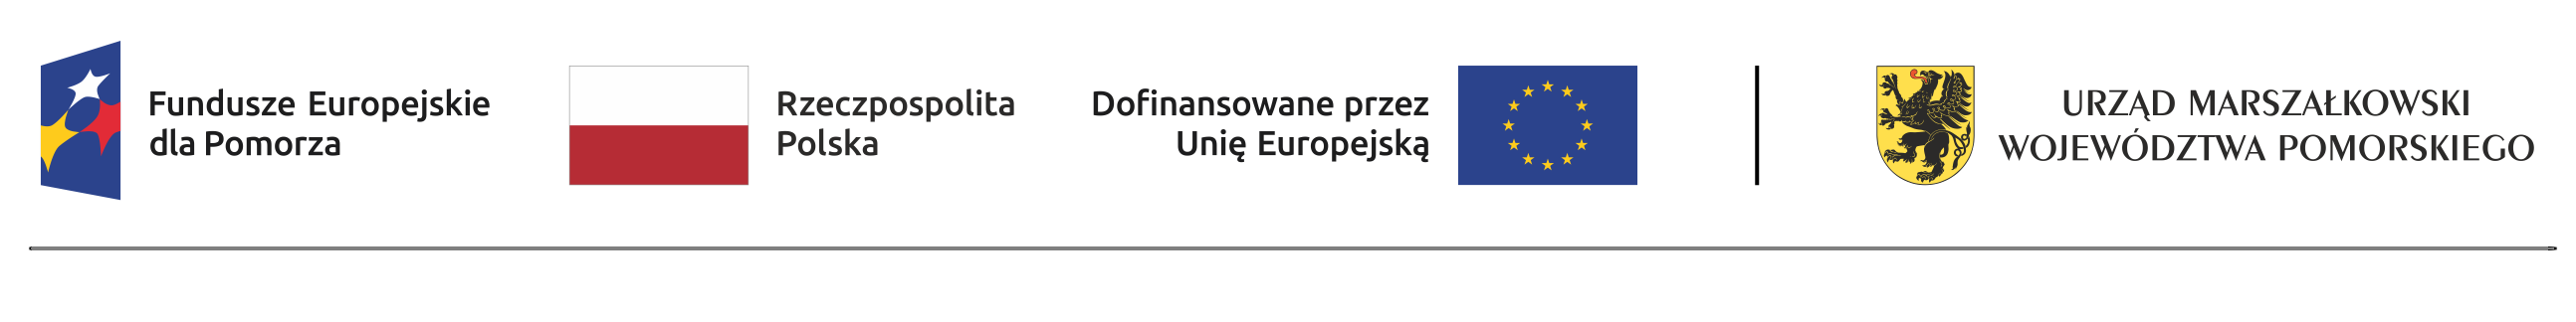 Fundusze Europejskie Dla Pomorza - Rzeczpospolita Polska - Dofinansowane przez Unię Europejską - Urząd Marszałkowski Województwa Pomorskiego